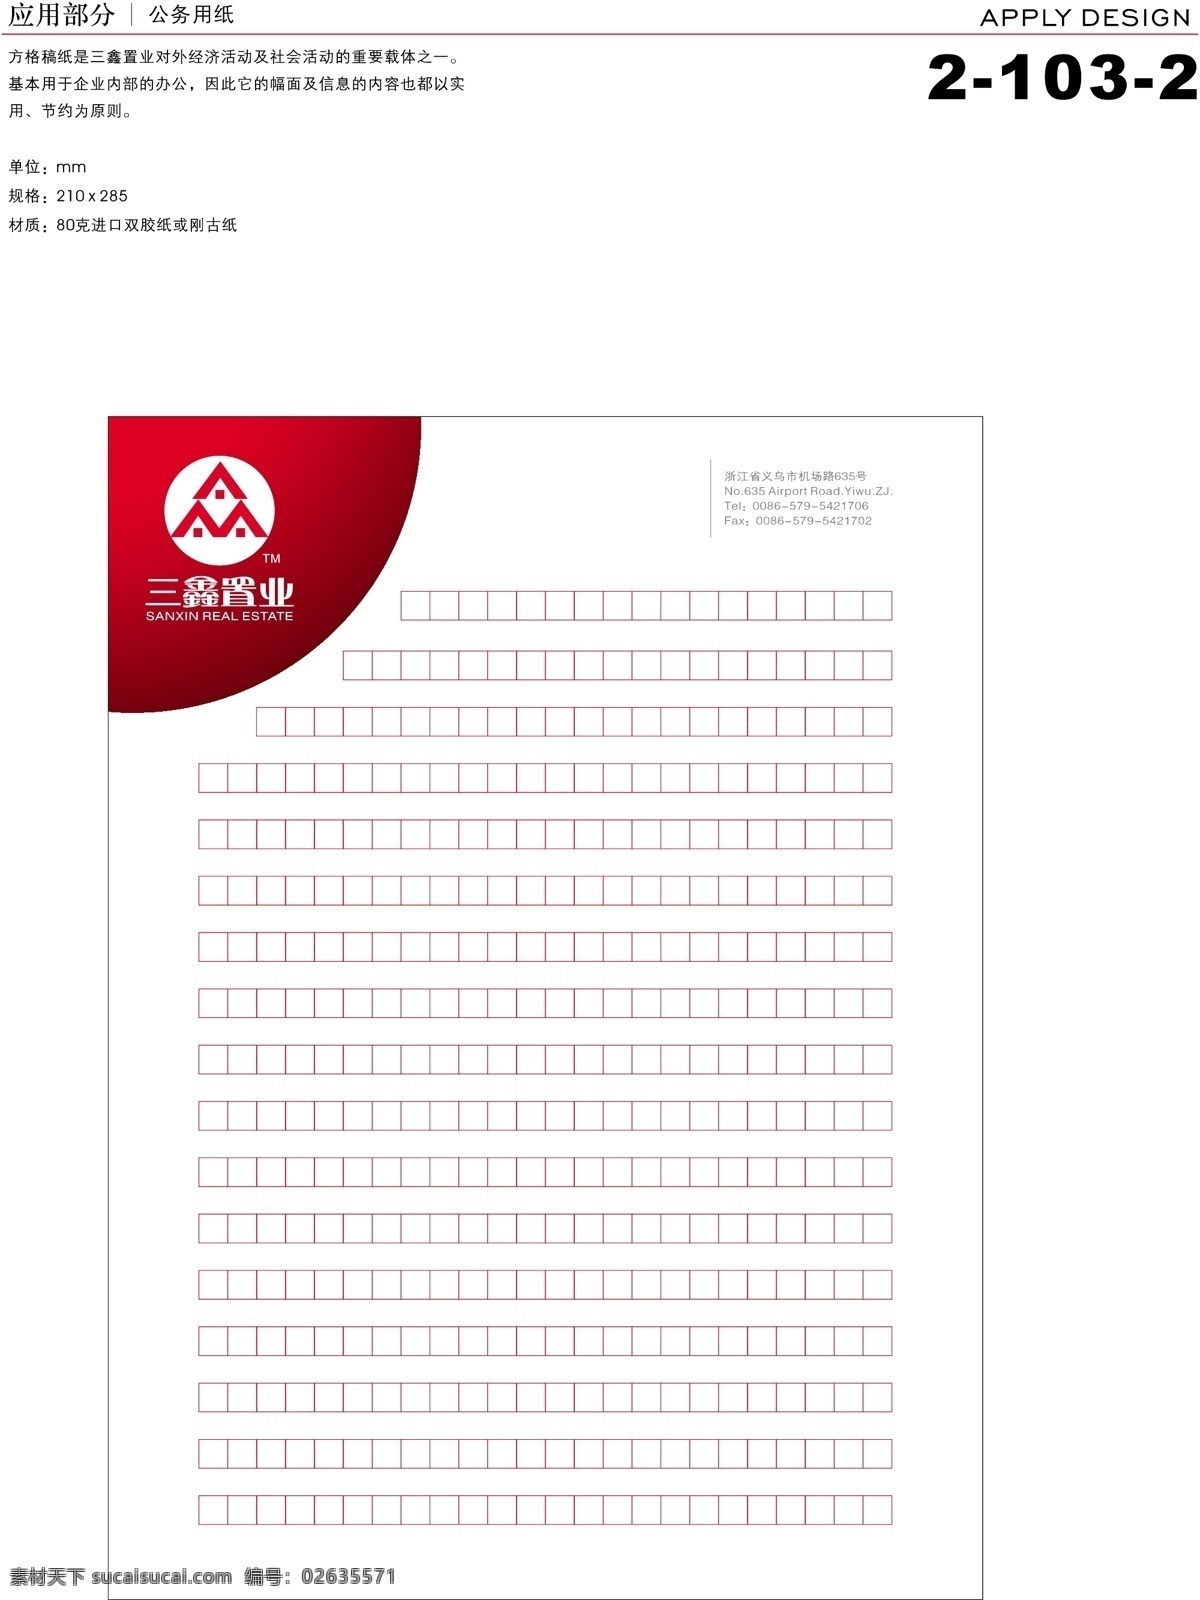 深圳 三鑫 置业 vi vi宝典 vi设计 办公用品 矢量 文件 应用1 海报 其他海报设计